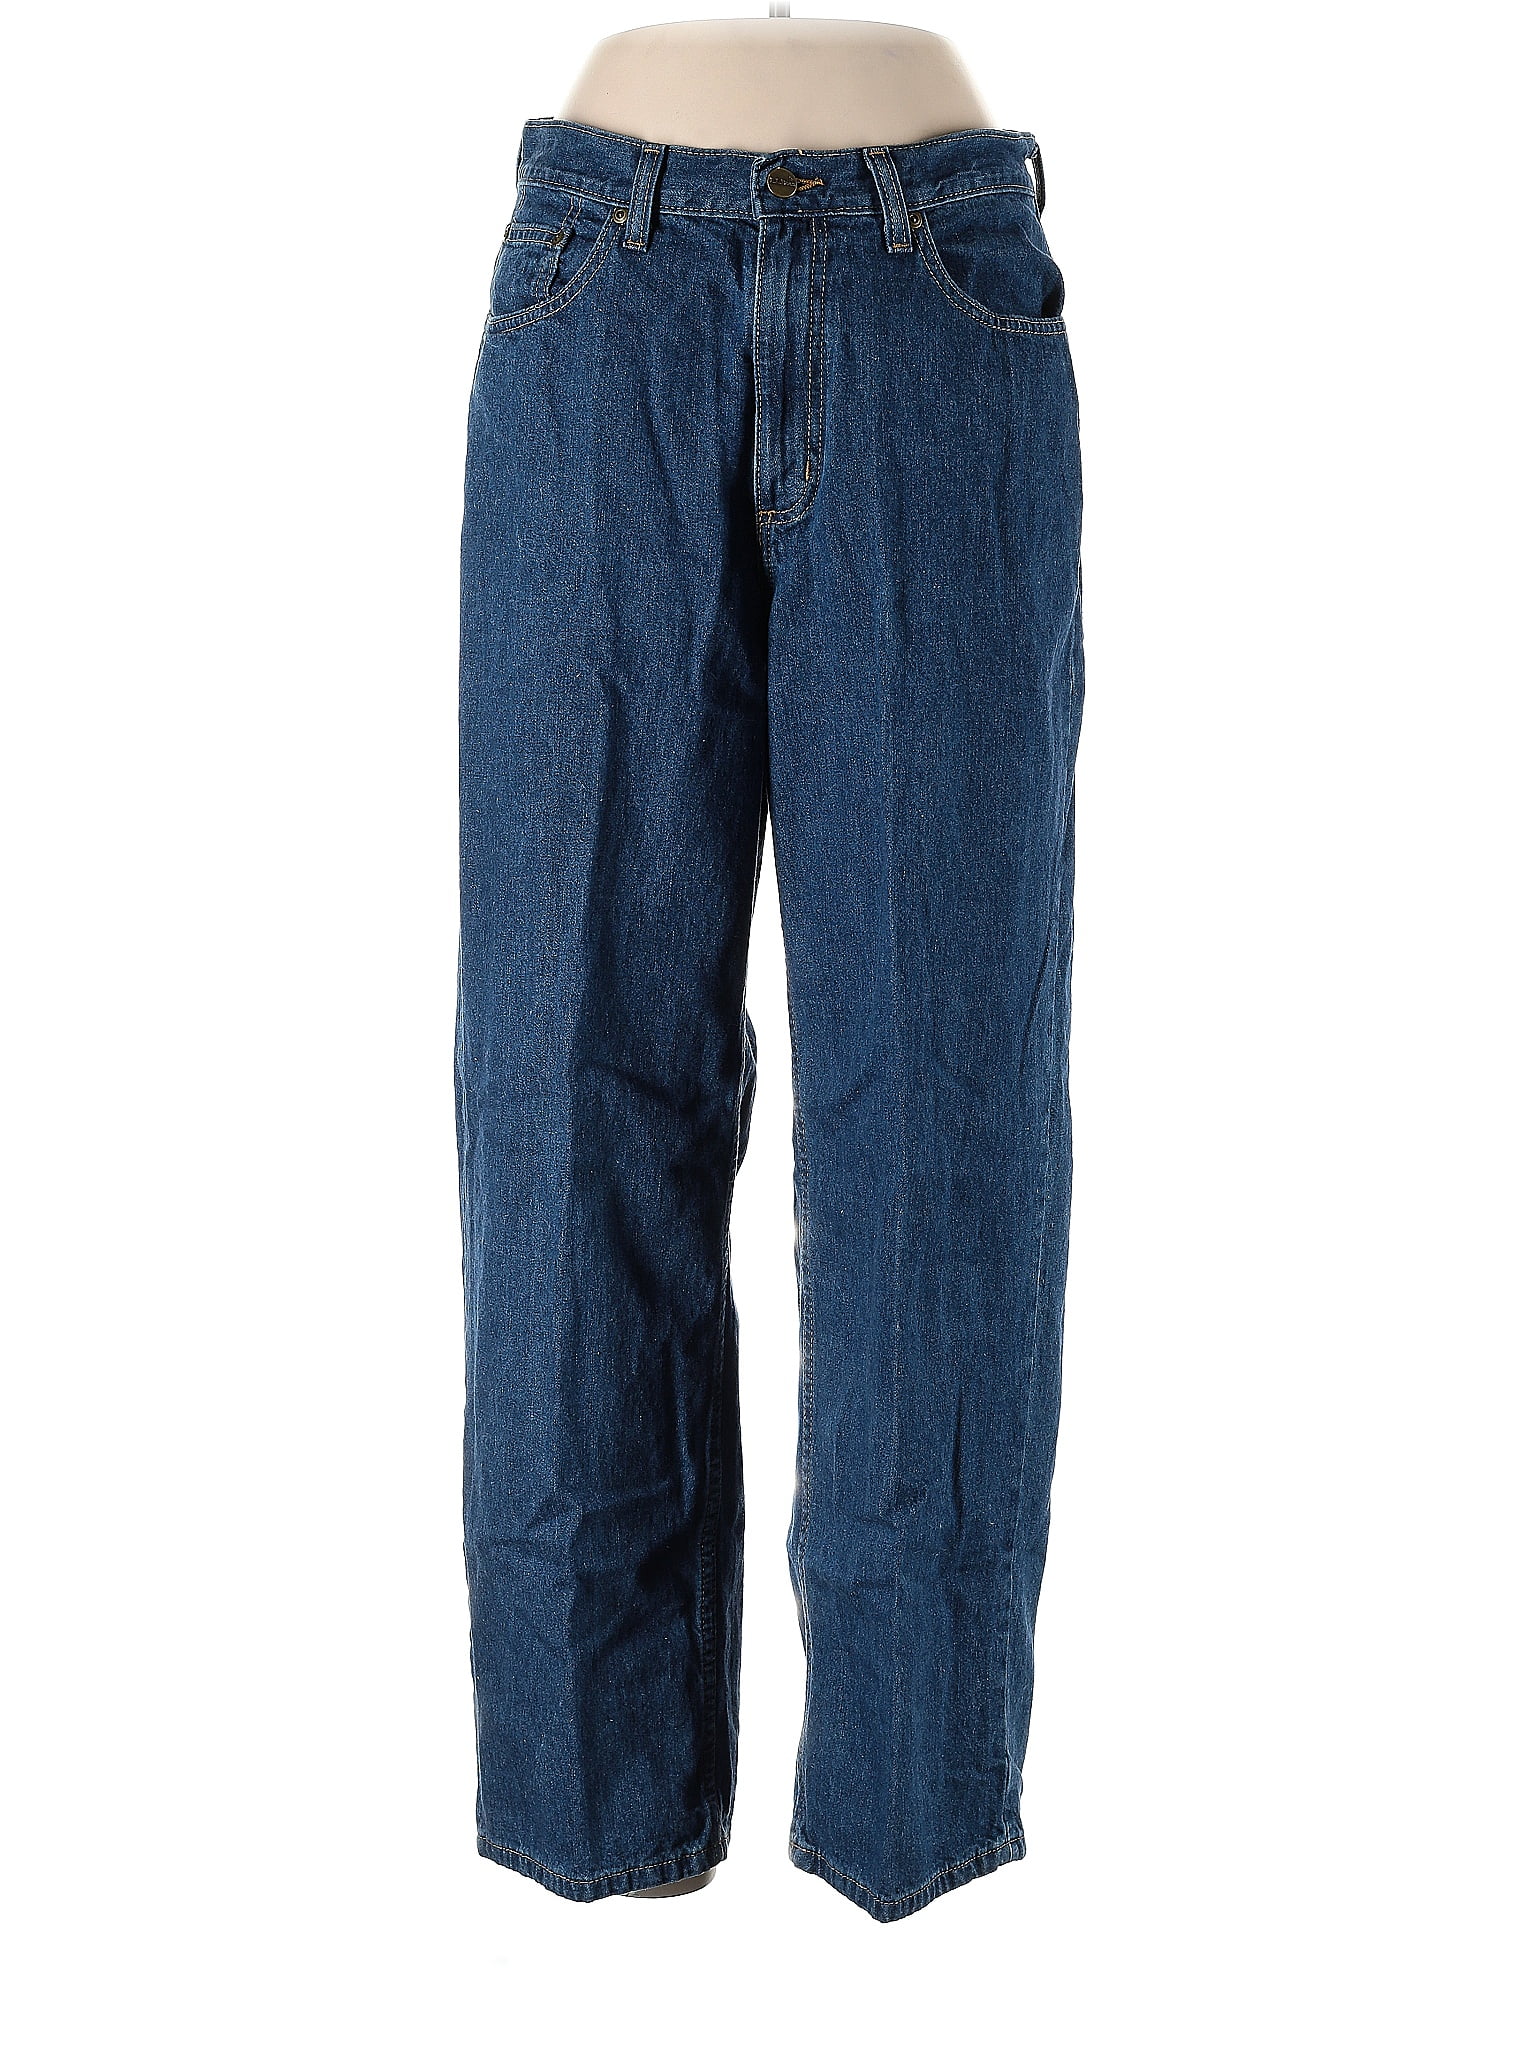 L.L.Bean 100% Cotton Solid Blue Jeans Size 12 (Petite) - 48% off | thredUP